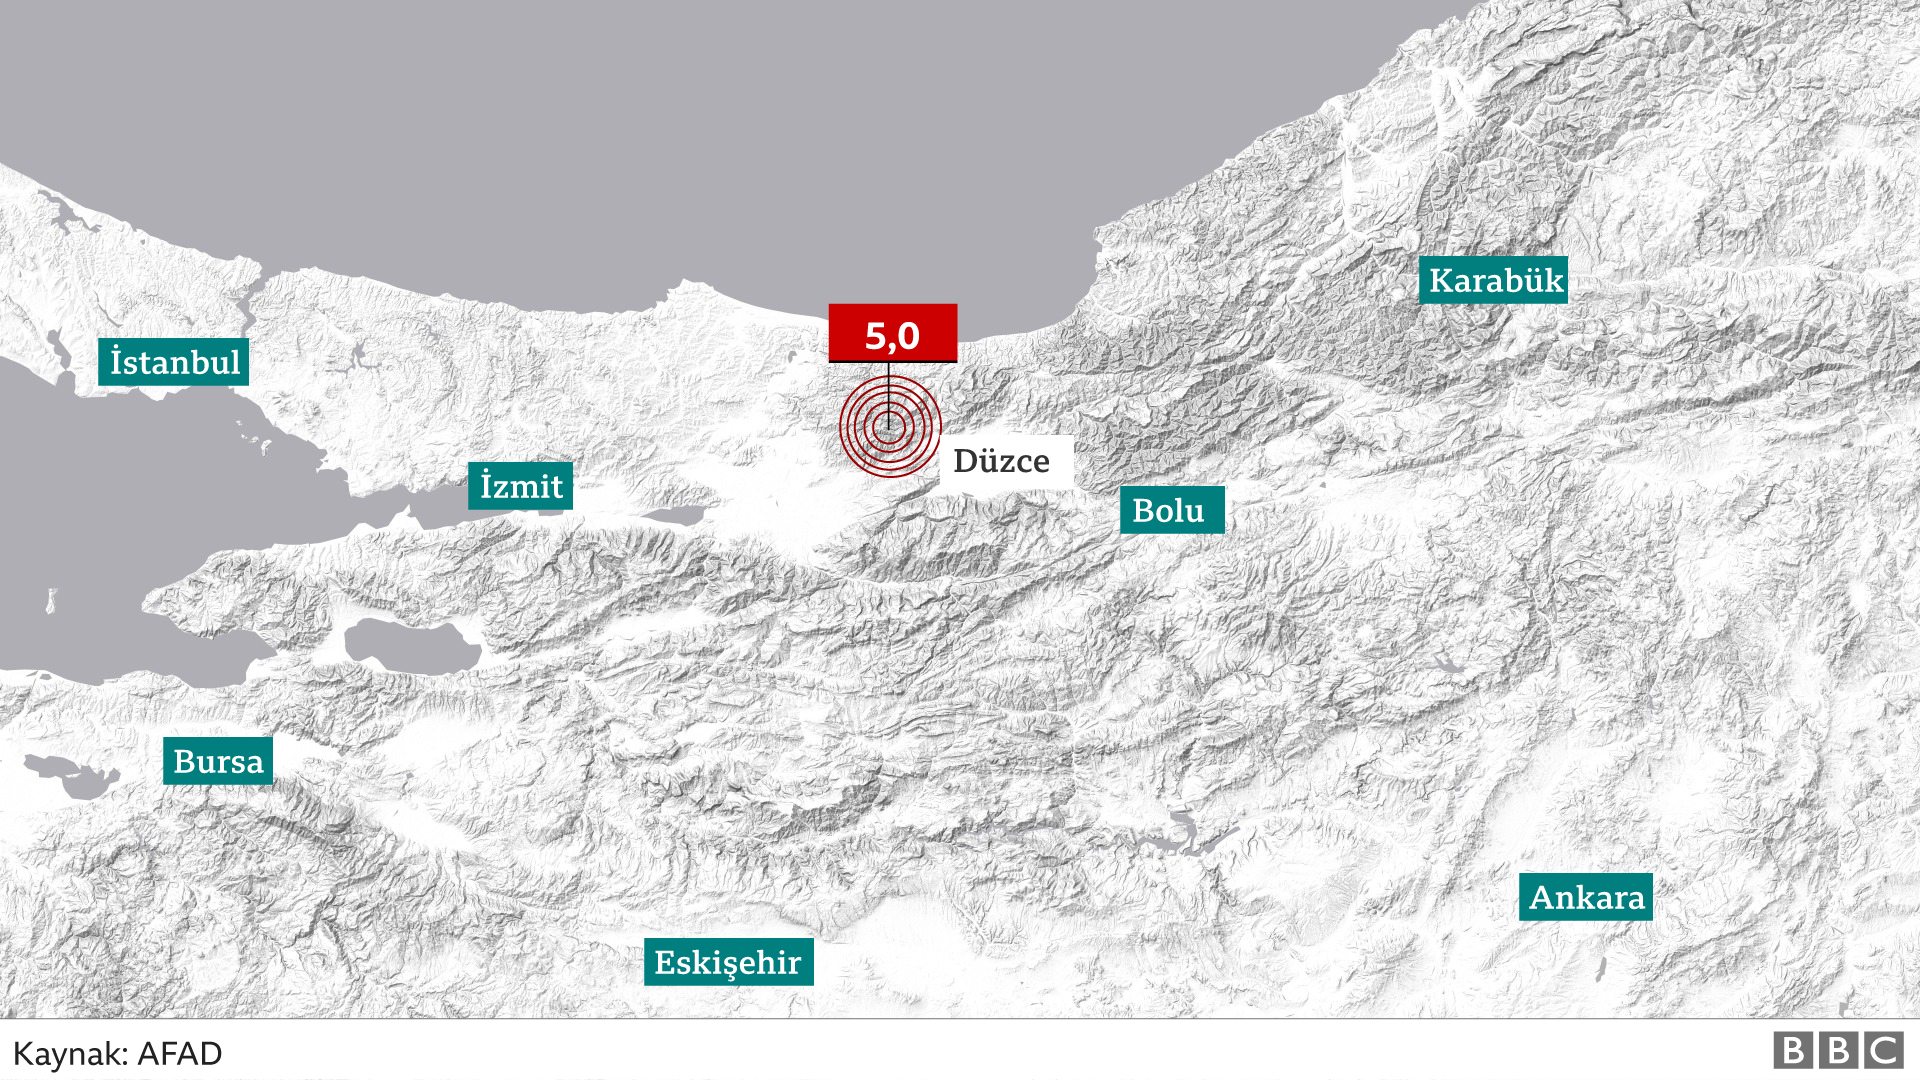 Sarsıntı: Düzce'de meydana gelen 5,0 büyüklüğündeki sarsıntı, İstanbul dahil birçok vilayette hissedildi